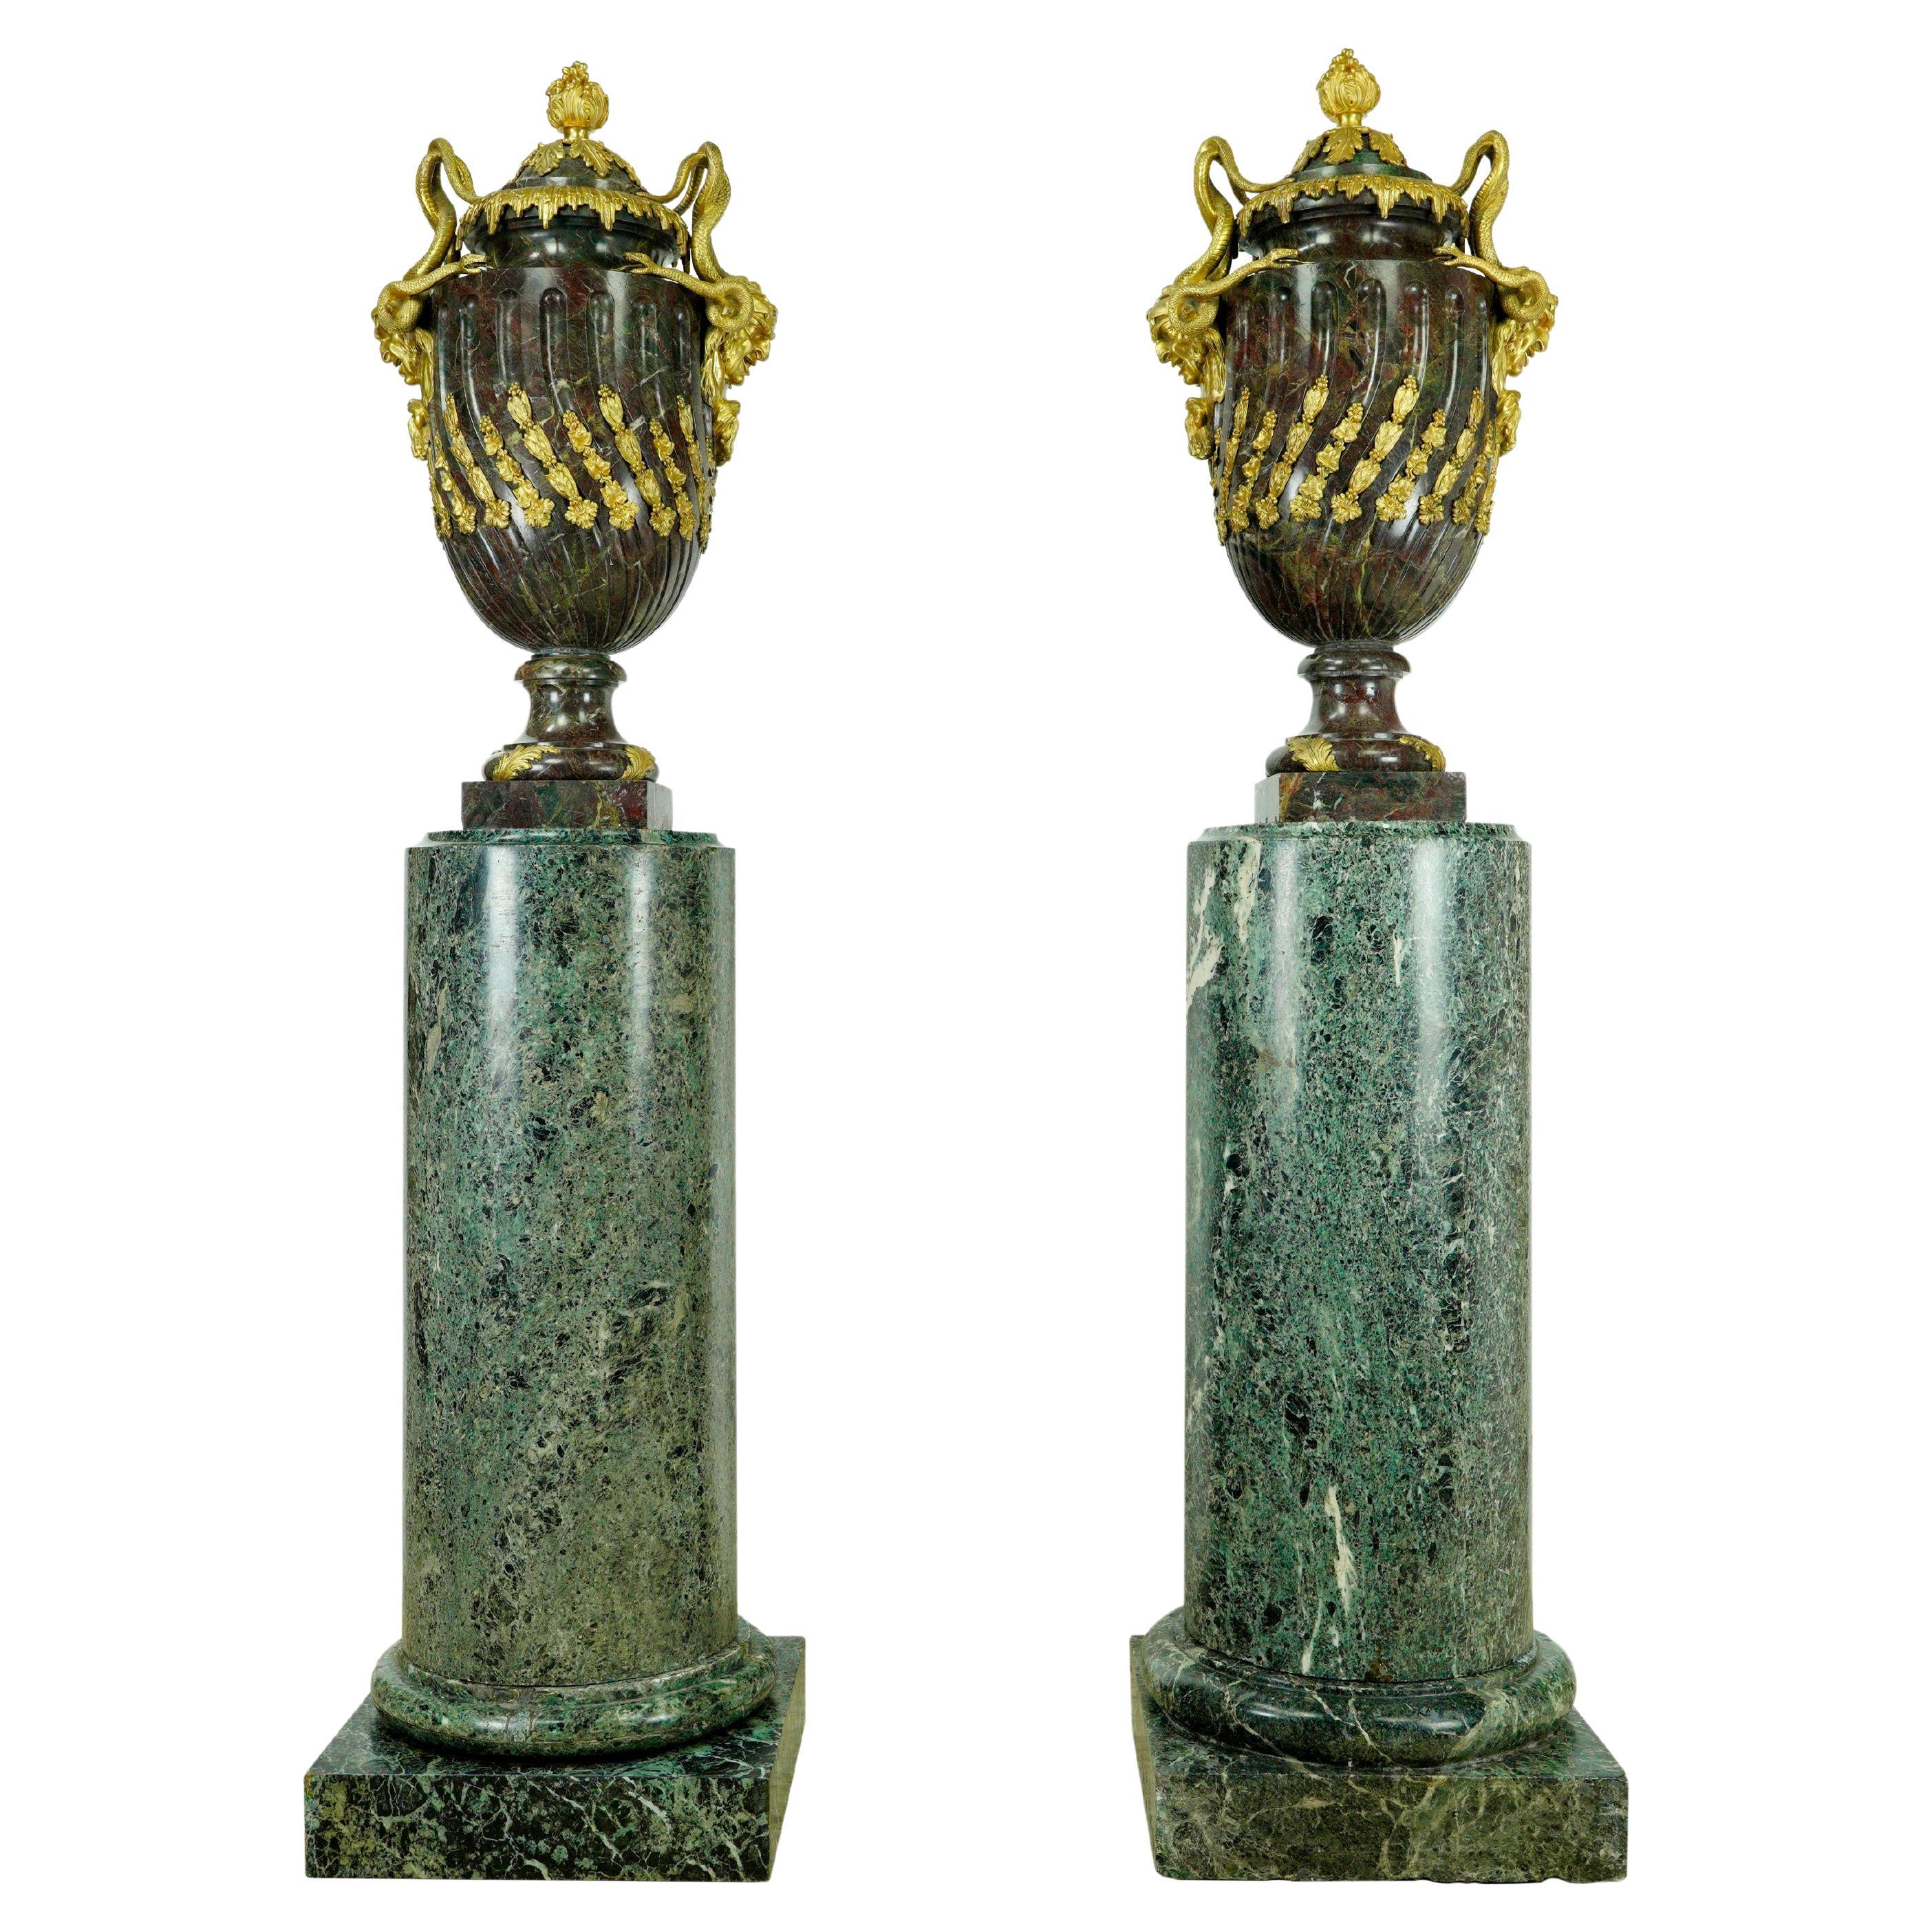 Paar französische Empire-Urnensockel aus grünem Marmor und vergoldeter Bronze im Empire-Stil